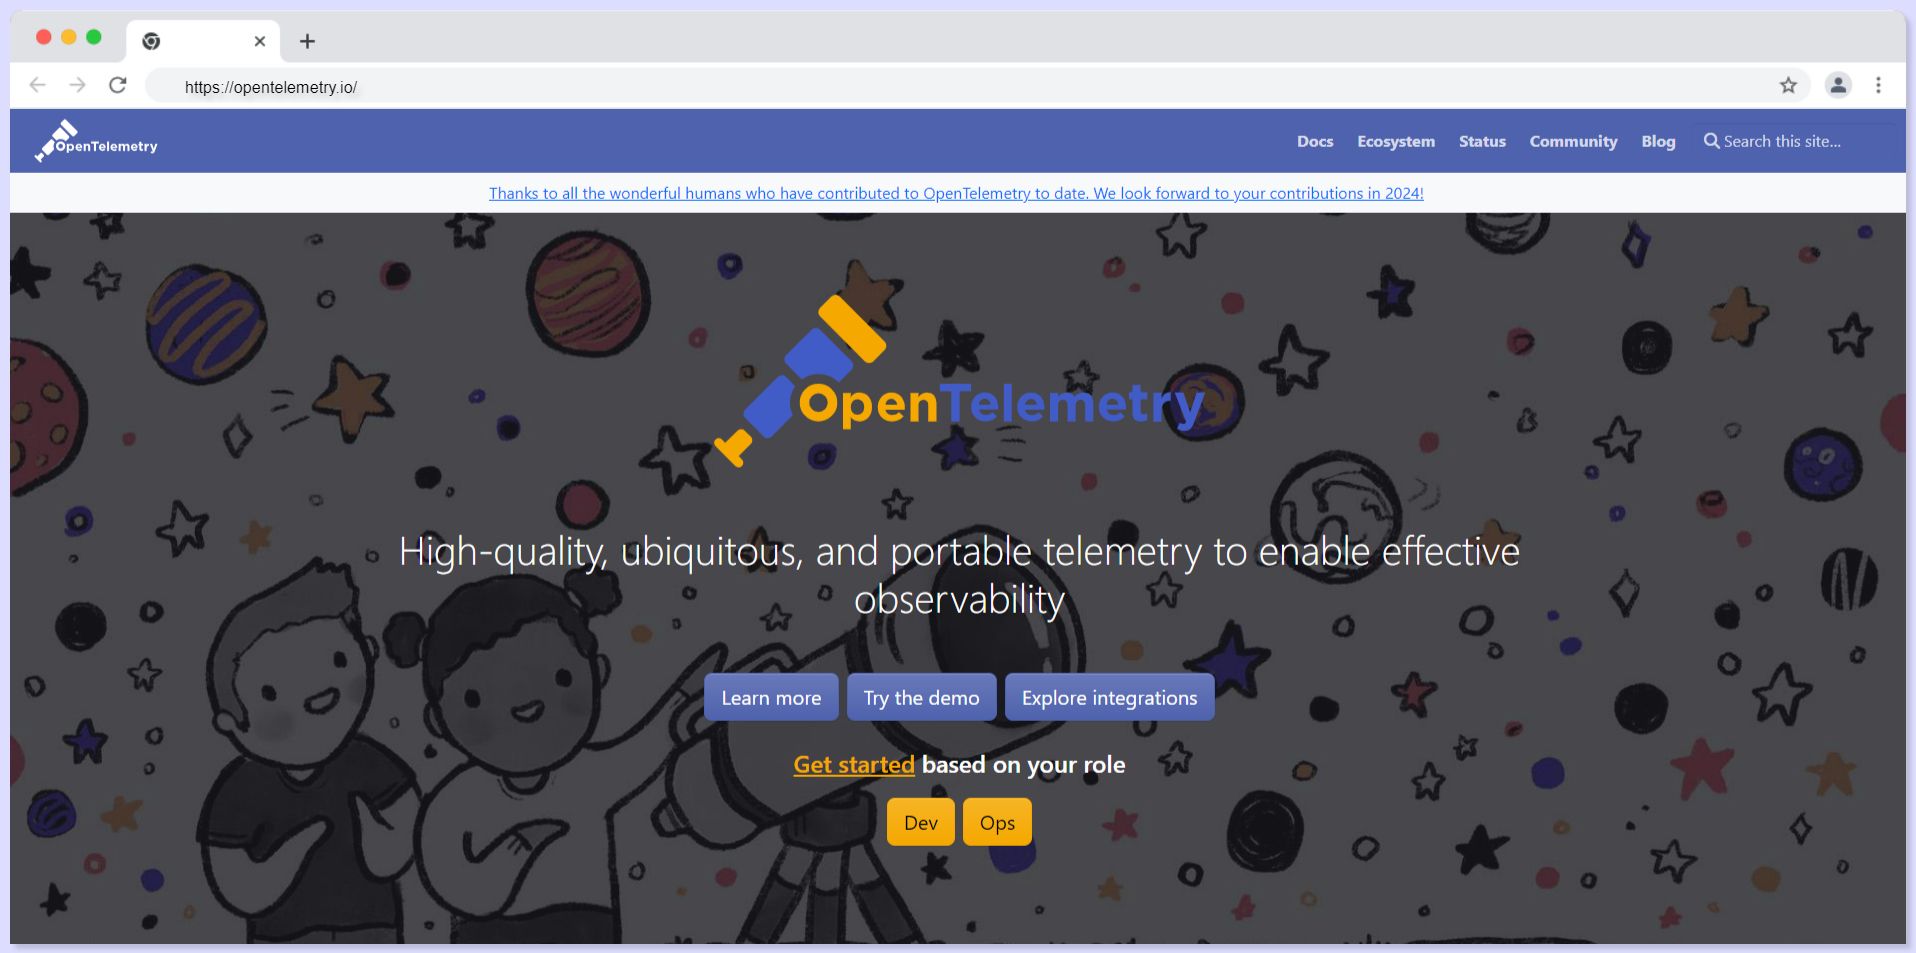 OpenTelemetry Website